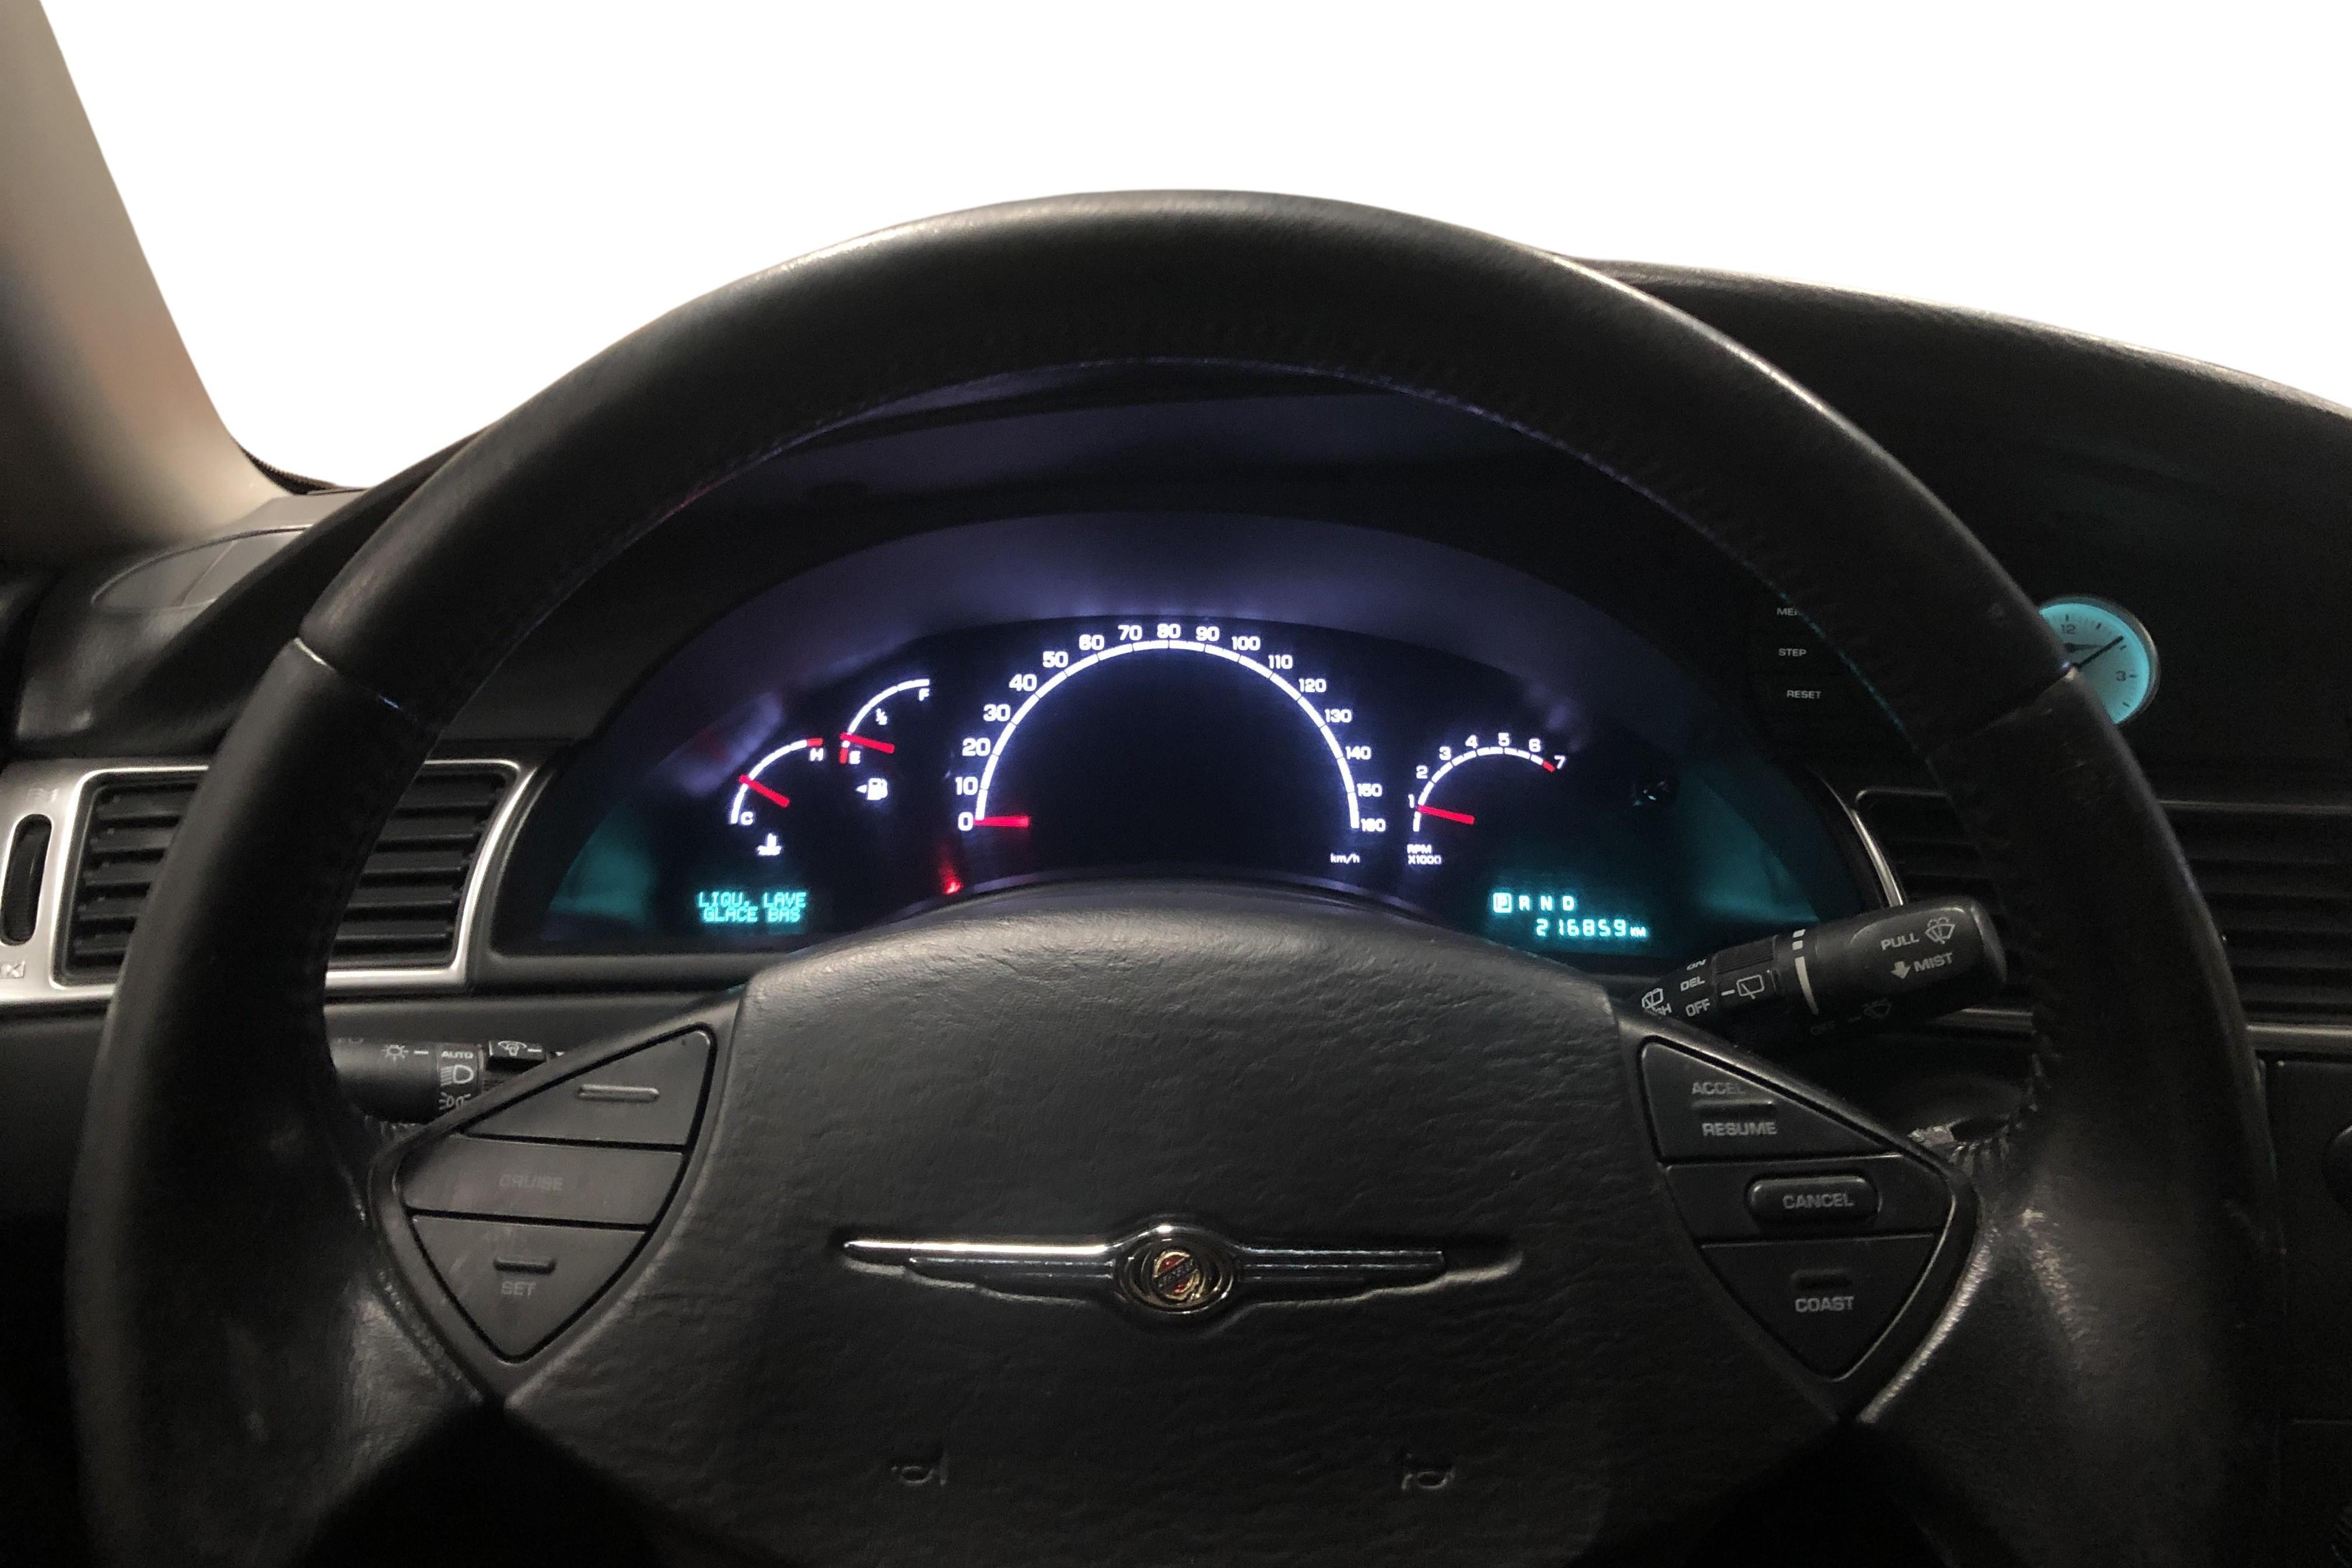 Chrysler Pacifica 3.5 V6 (253hk) - 216 850 km - Automatic - Light Blue - 2004